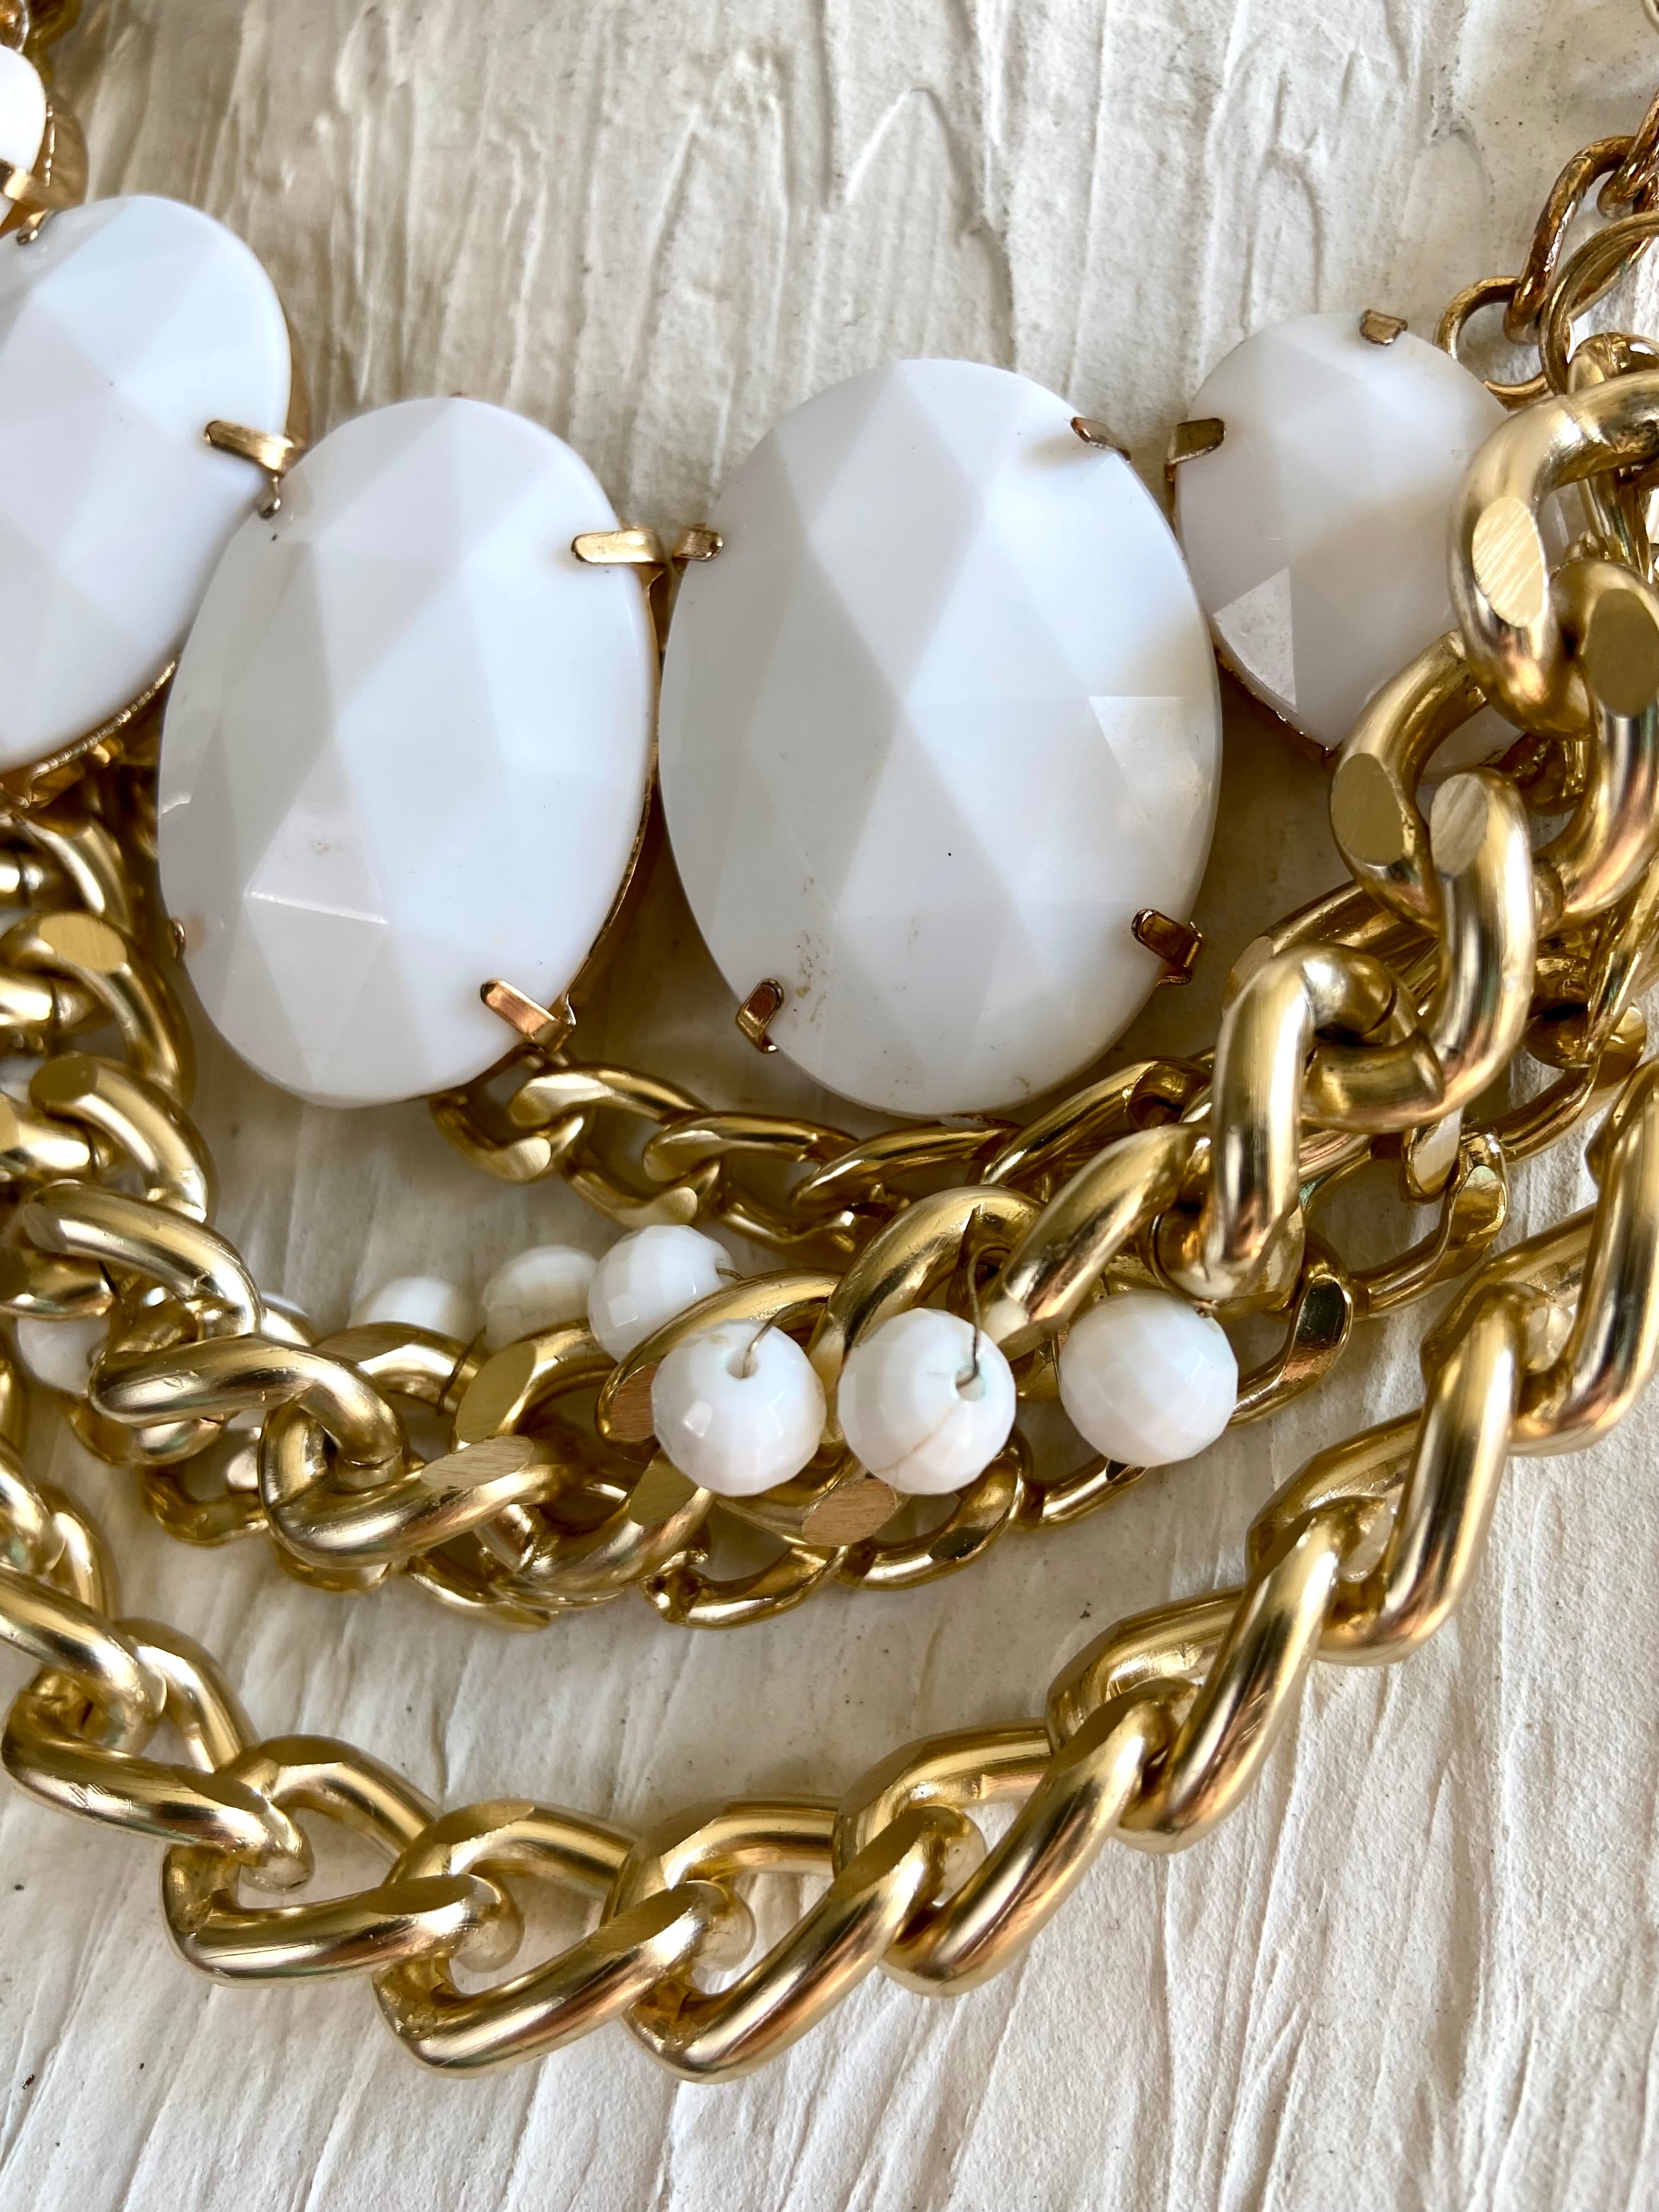 White & Gold chain belt